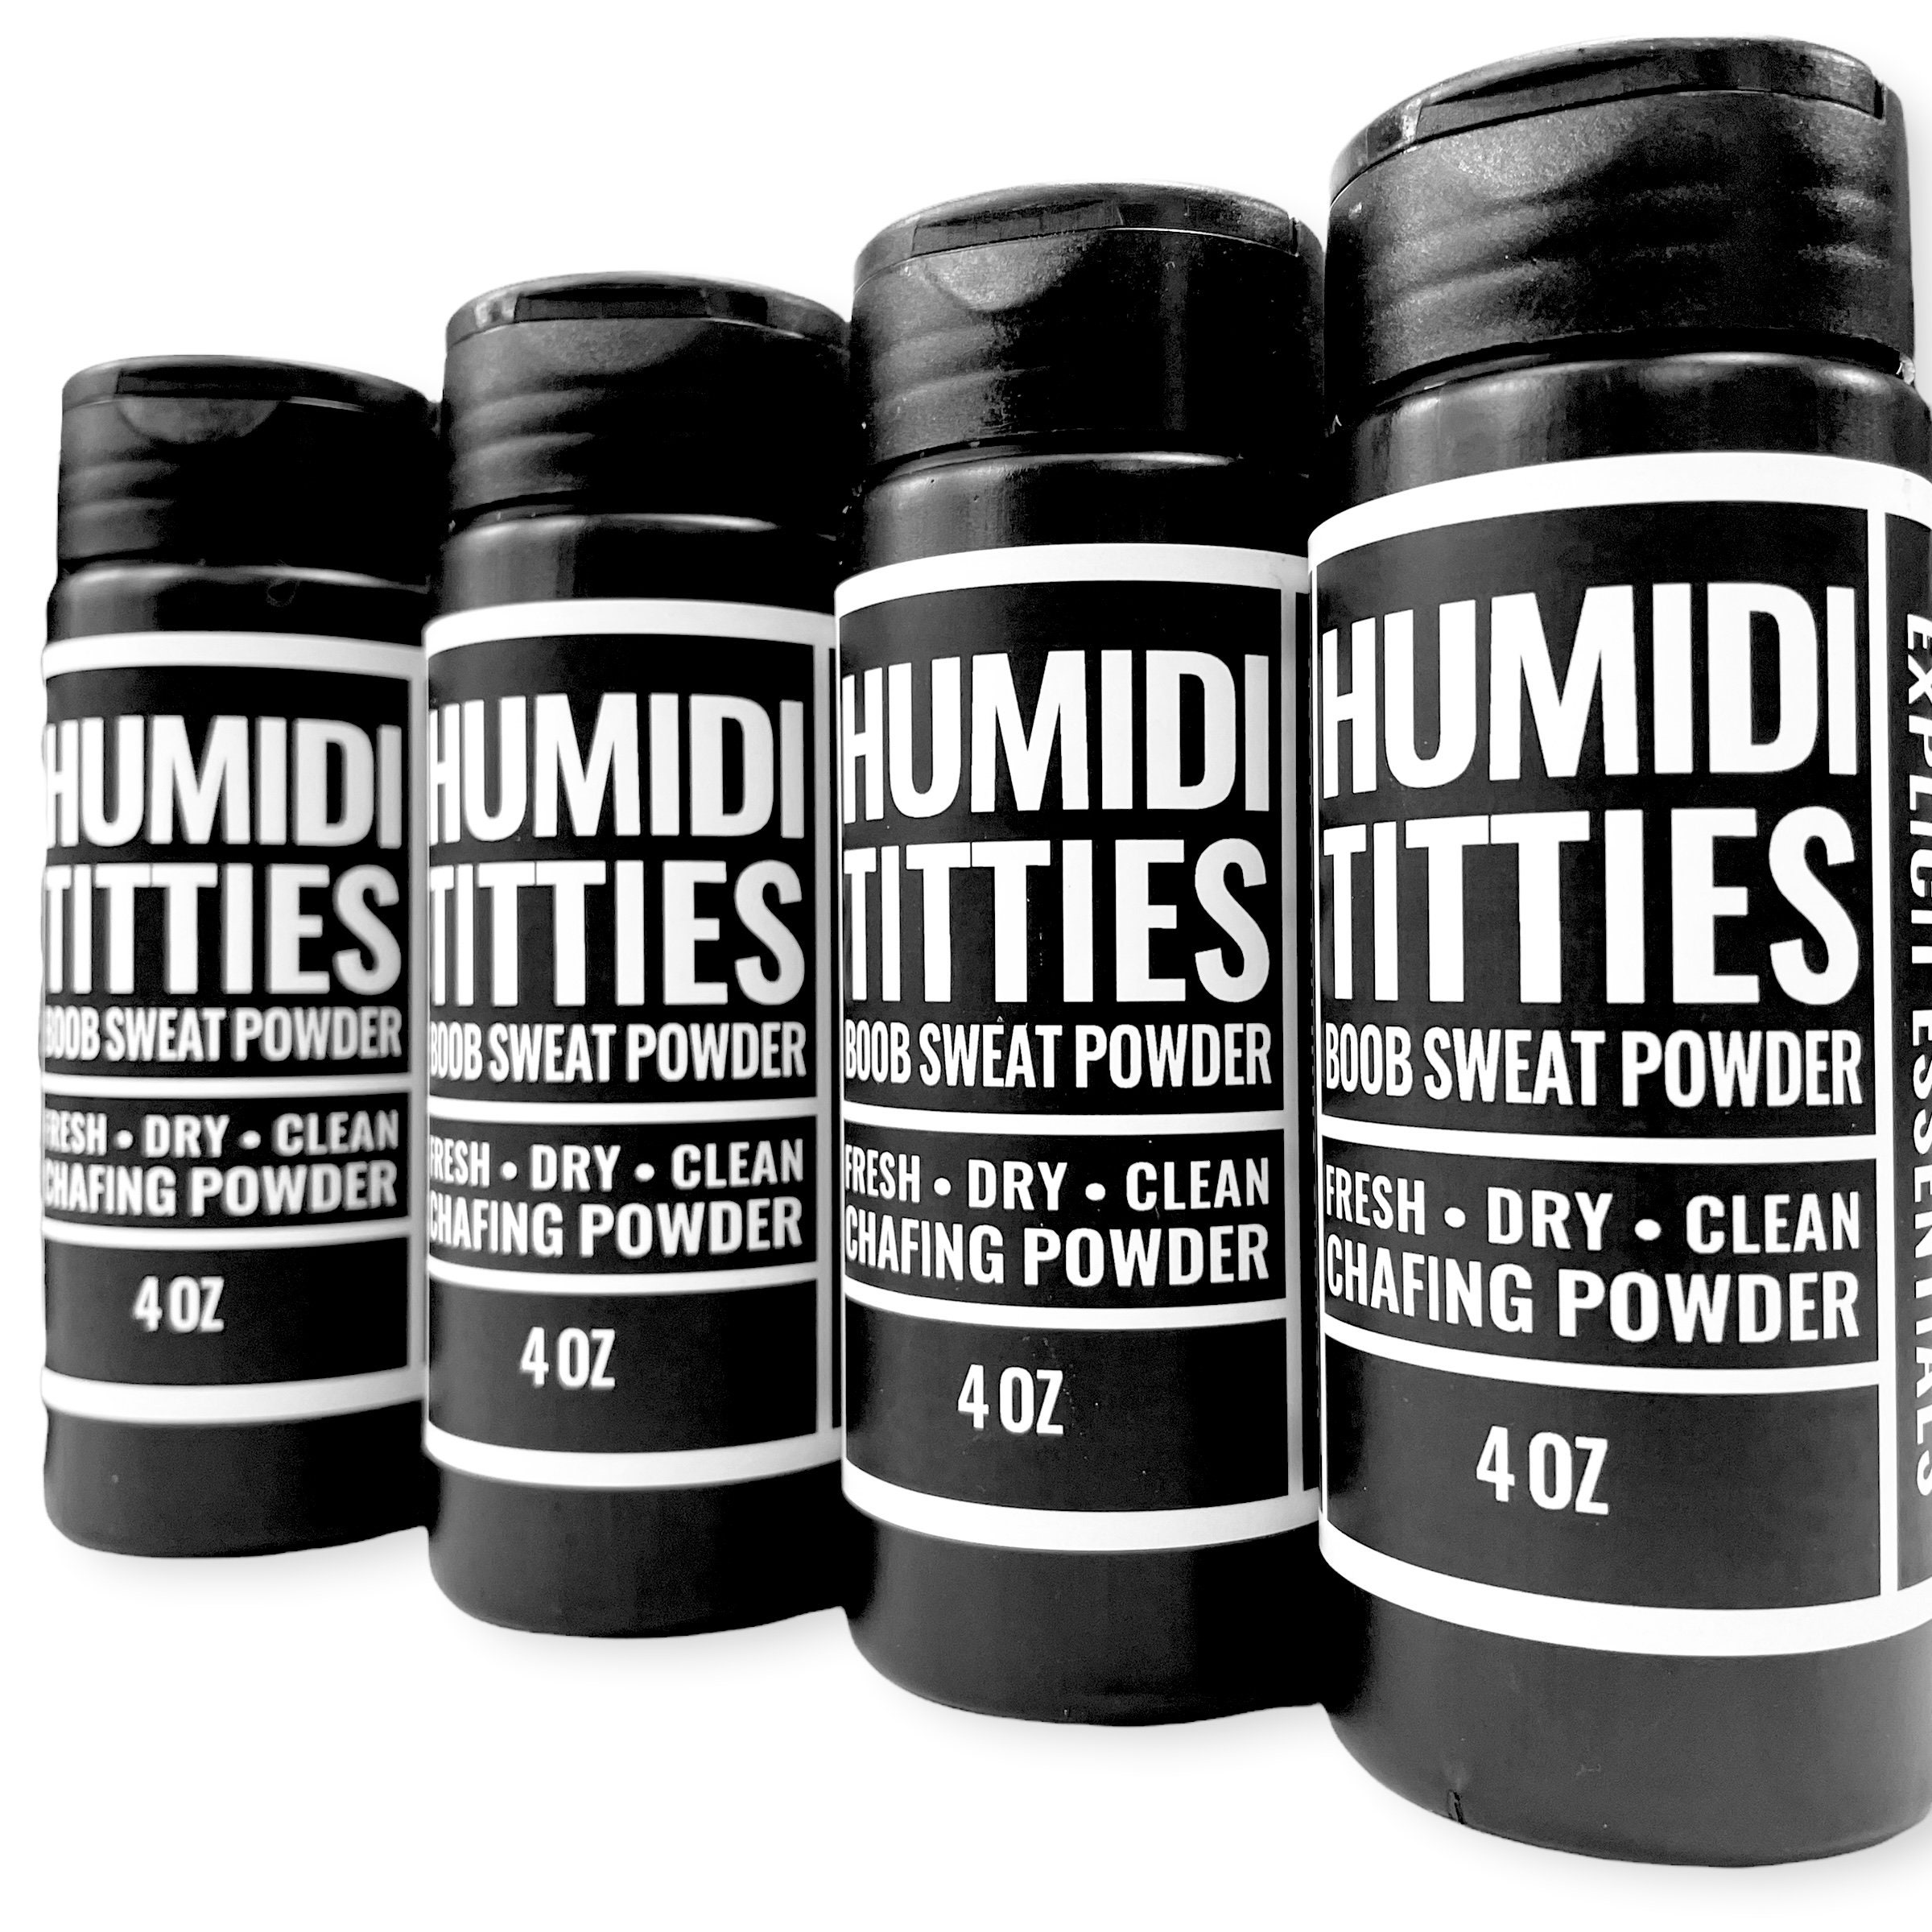 Humidititties, Boob Sweat Powder, Powder Deodorant, Underboob Sweat 